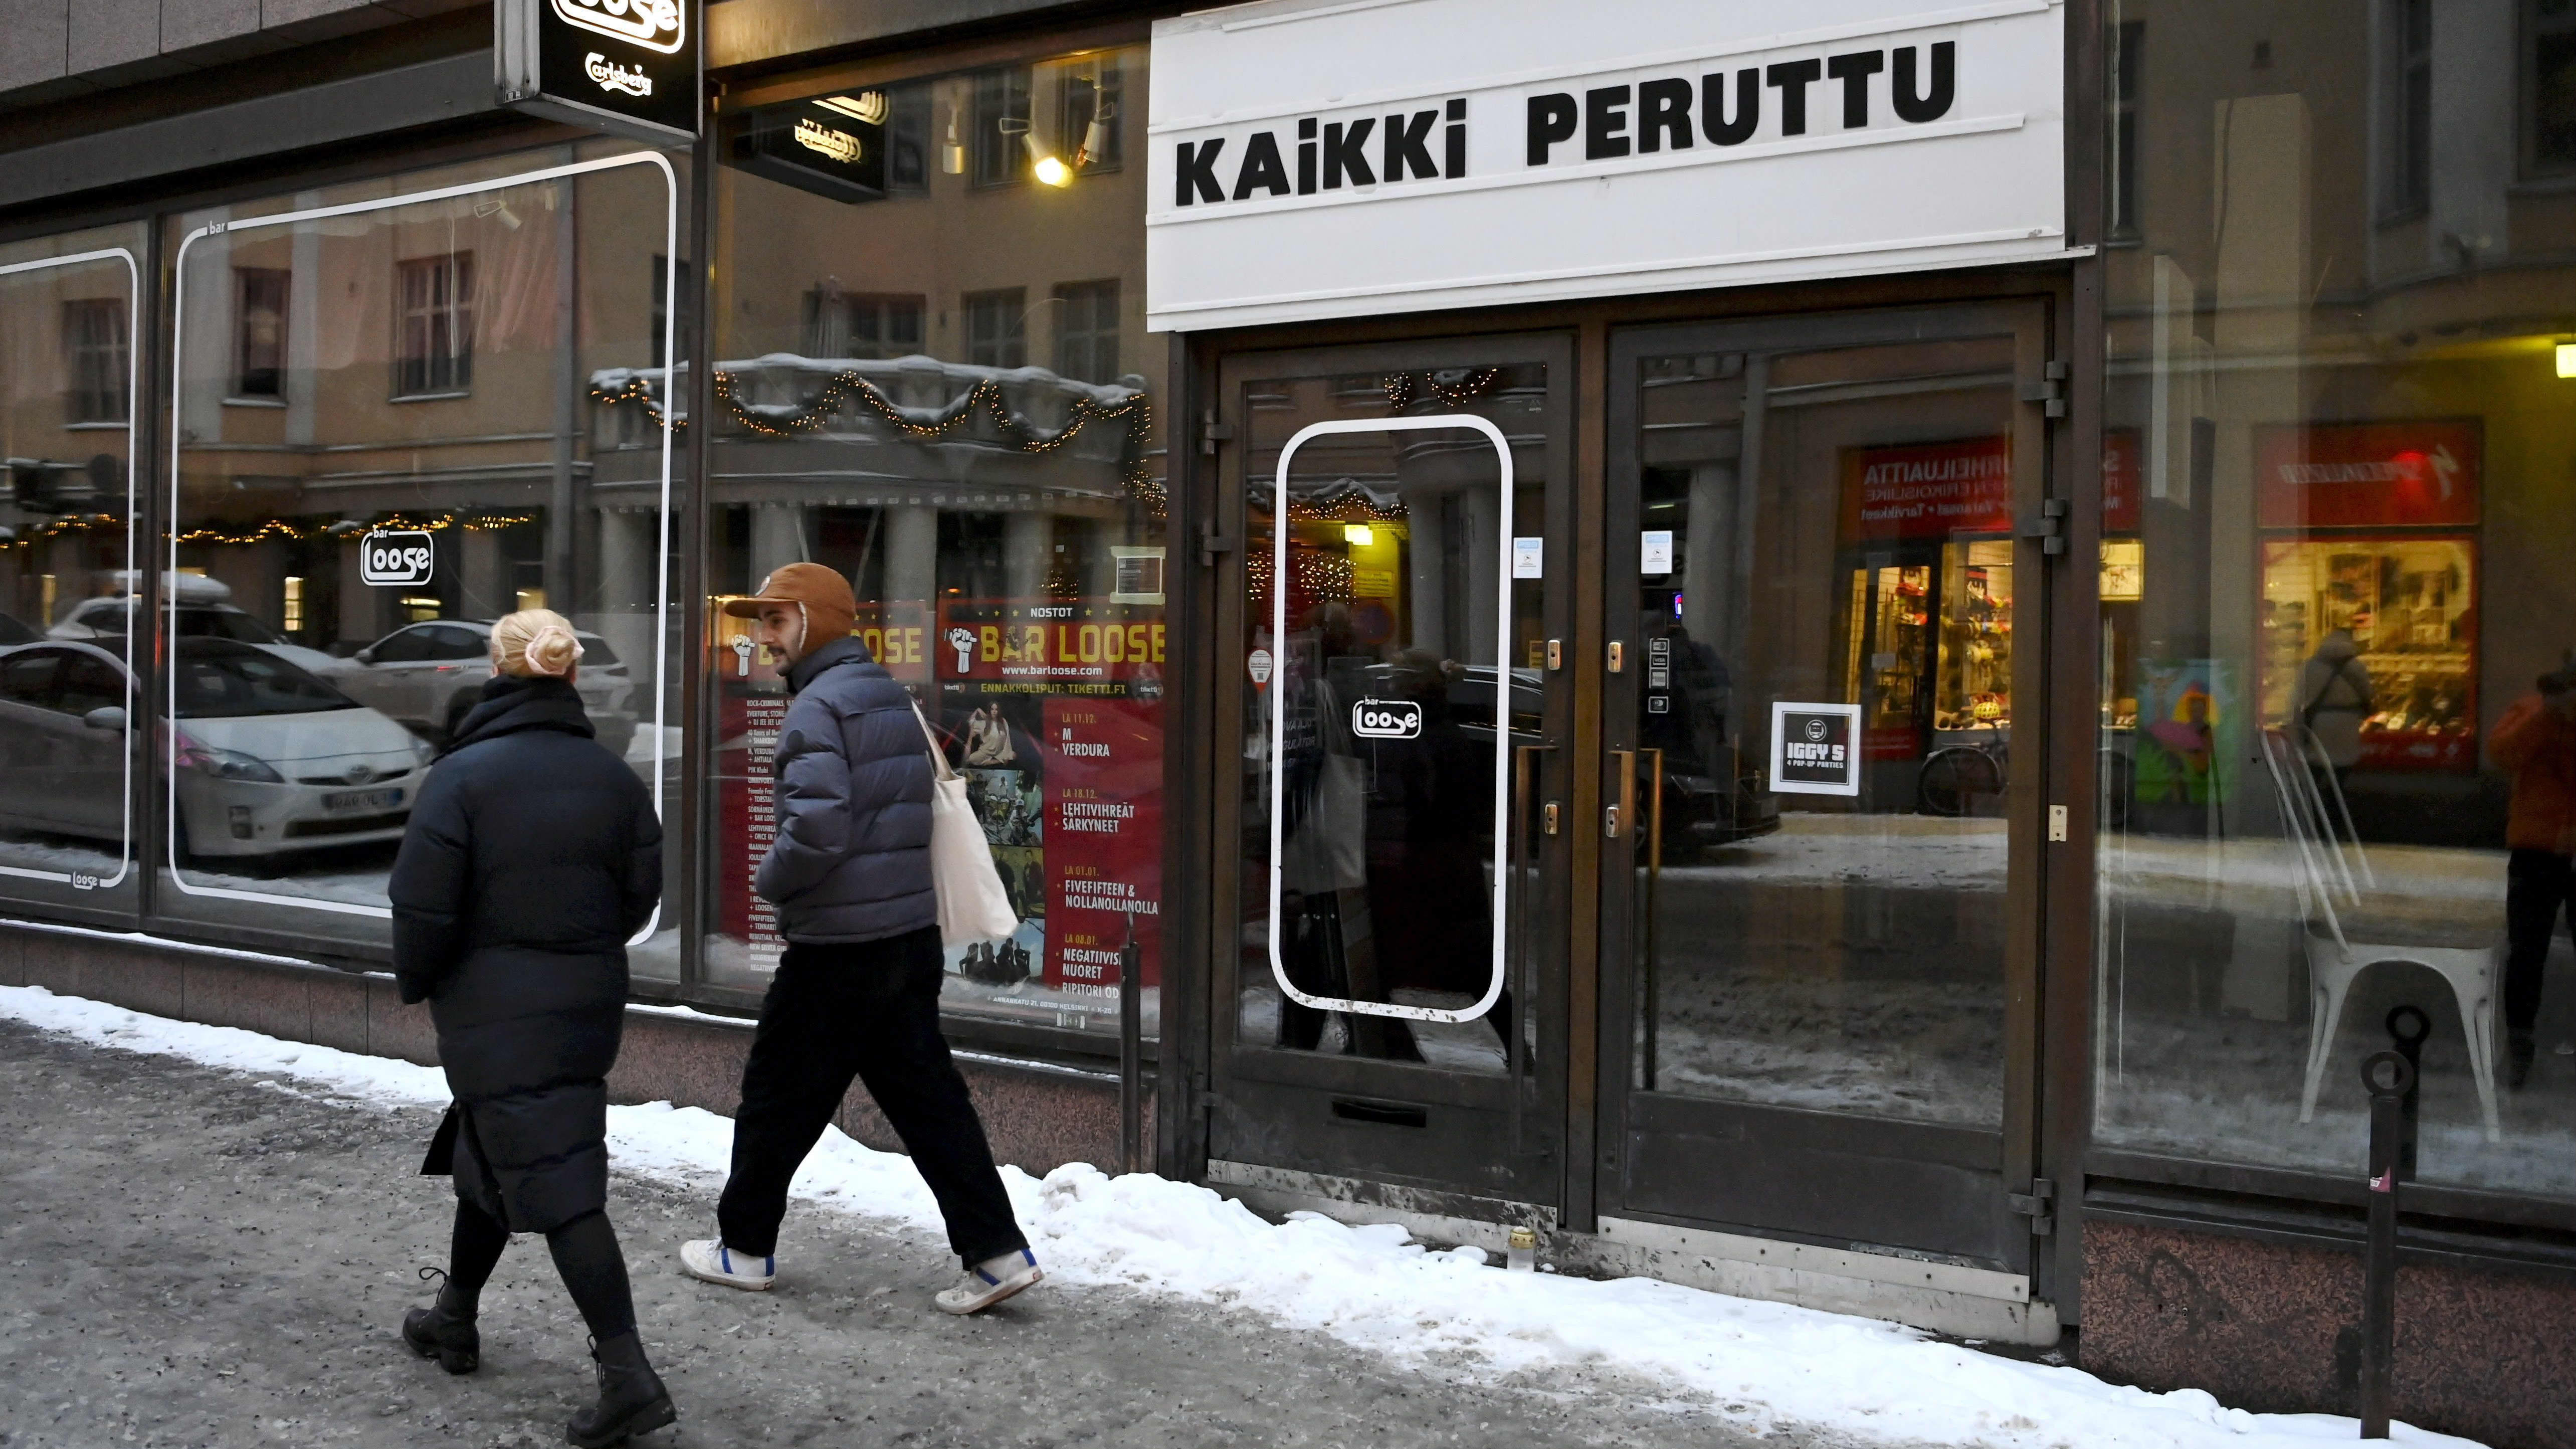 Ilmoitus "kaikki peruttu" ravintolan kyltissä Helsingin Annankadulla 12. tammikuuta 2022.